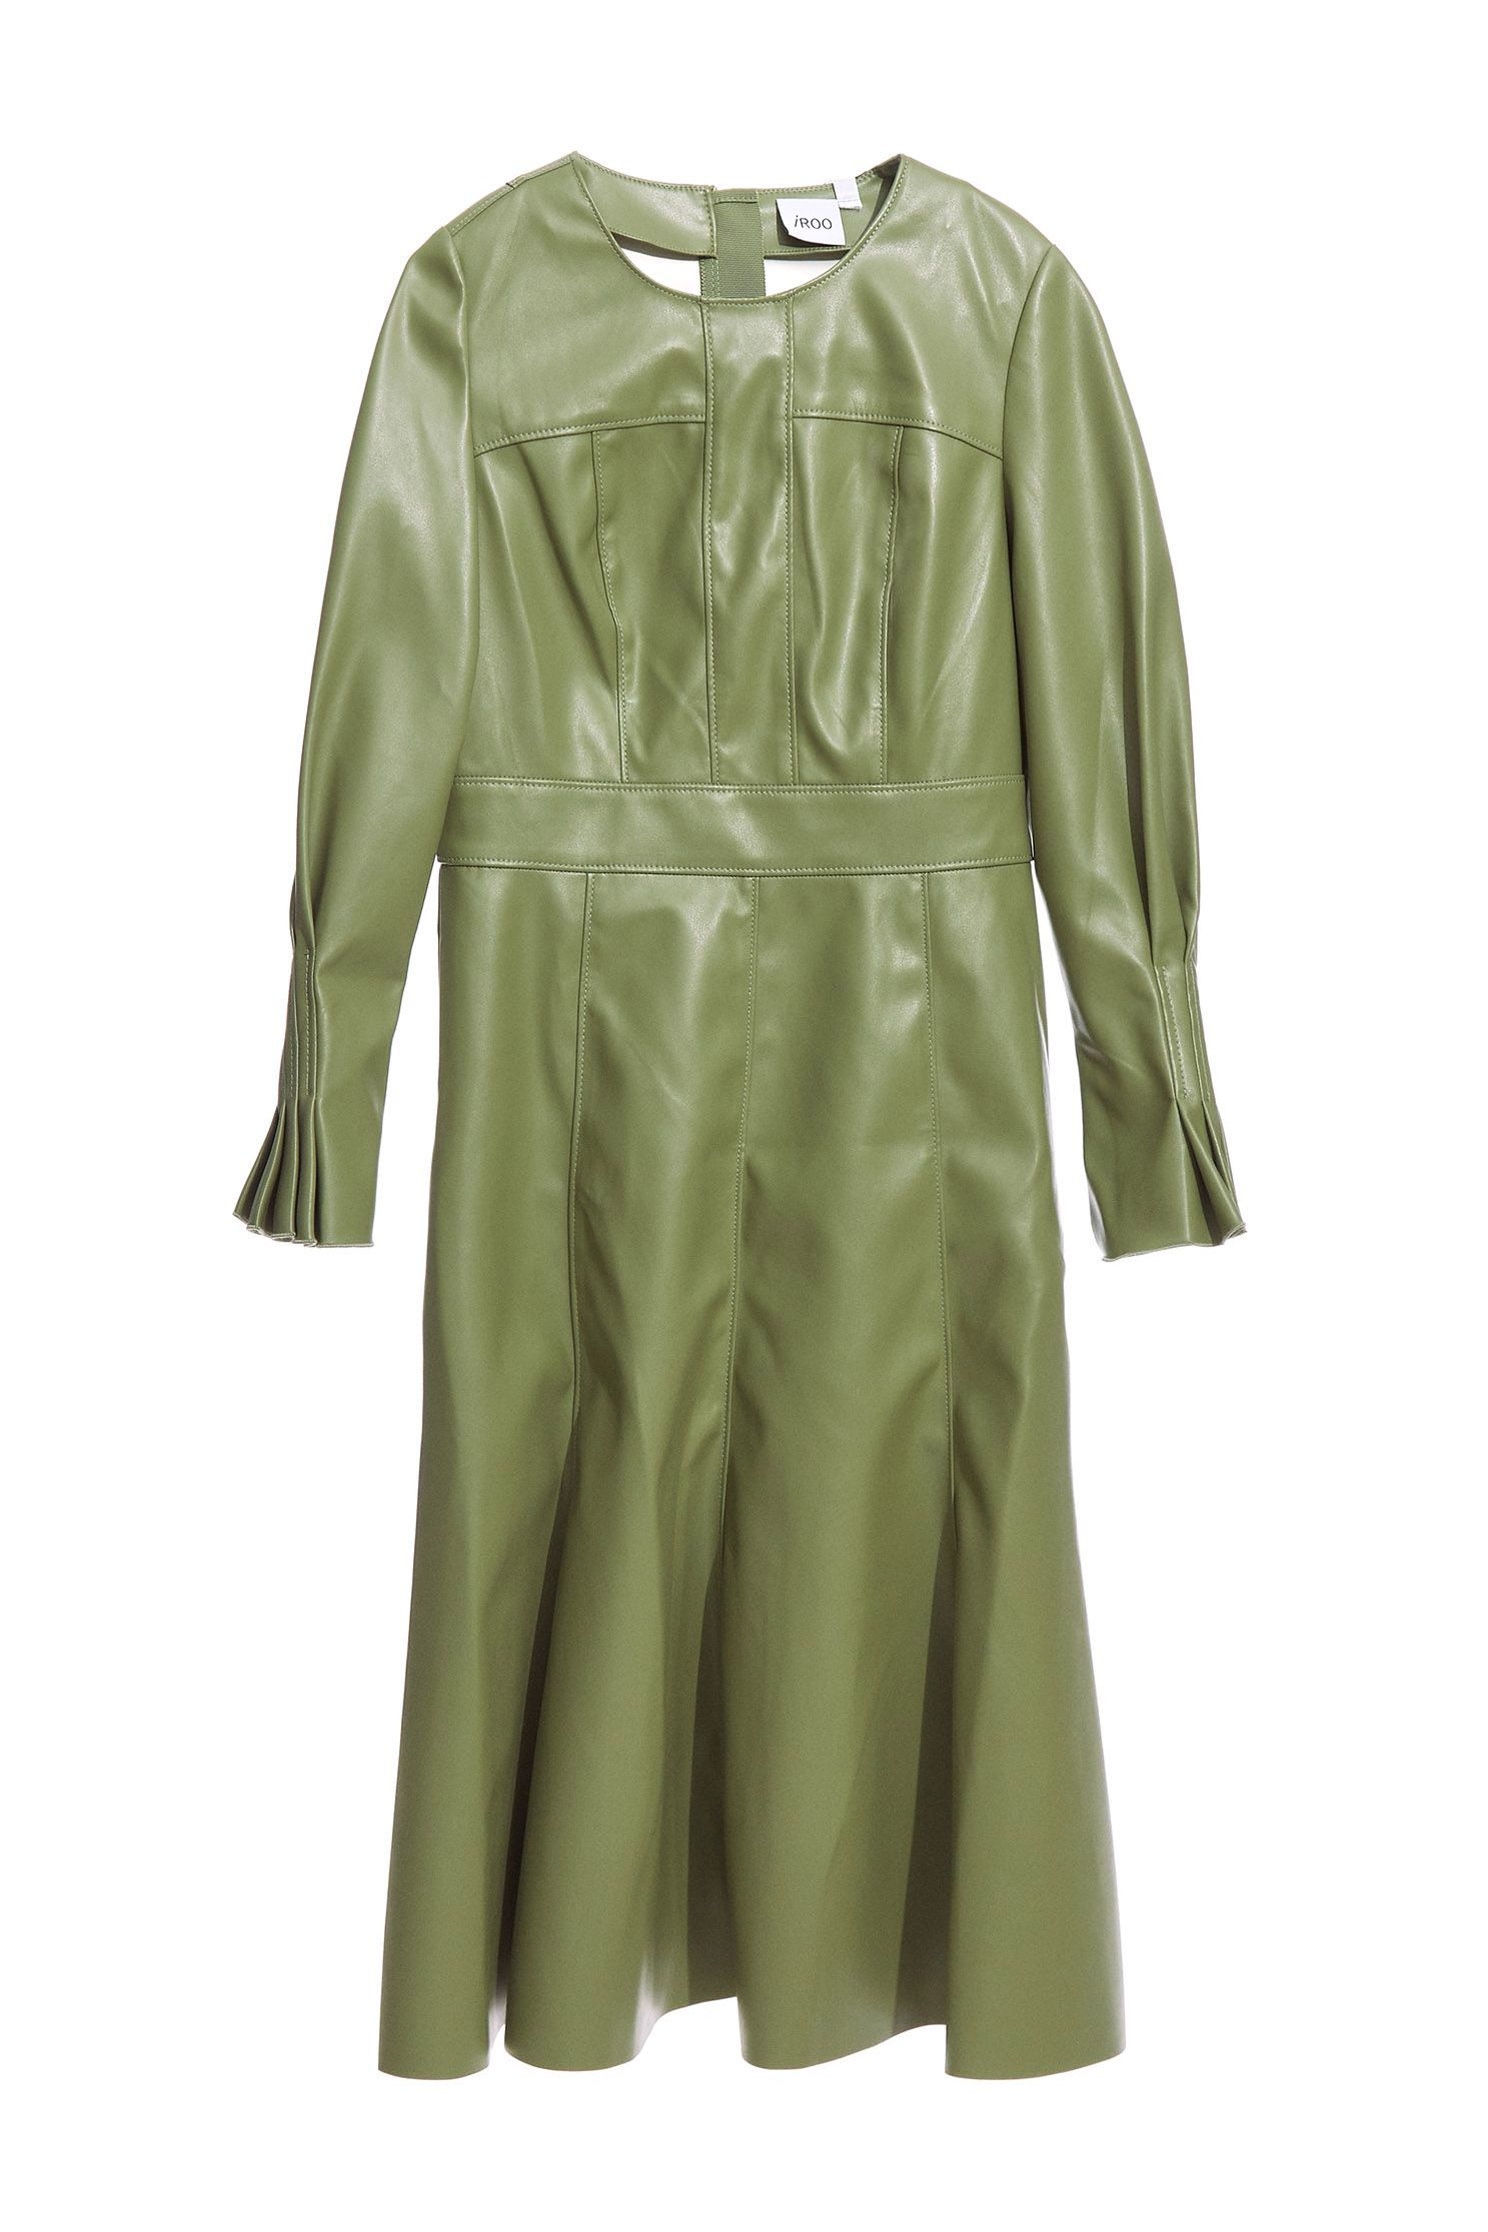 傘擺皮洋裝,氣質 洋裝,長袖 洋裝,綠色 洋裝傘擺皮洋裝,一般洋裝,秋冬穿搭,長袖洋裝